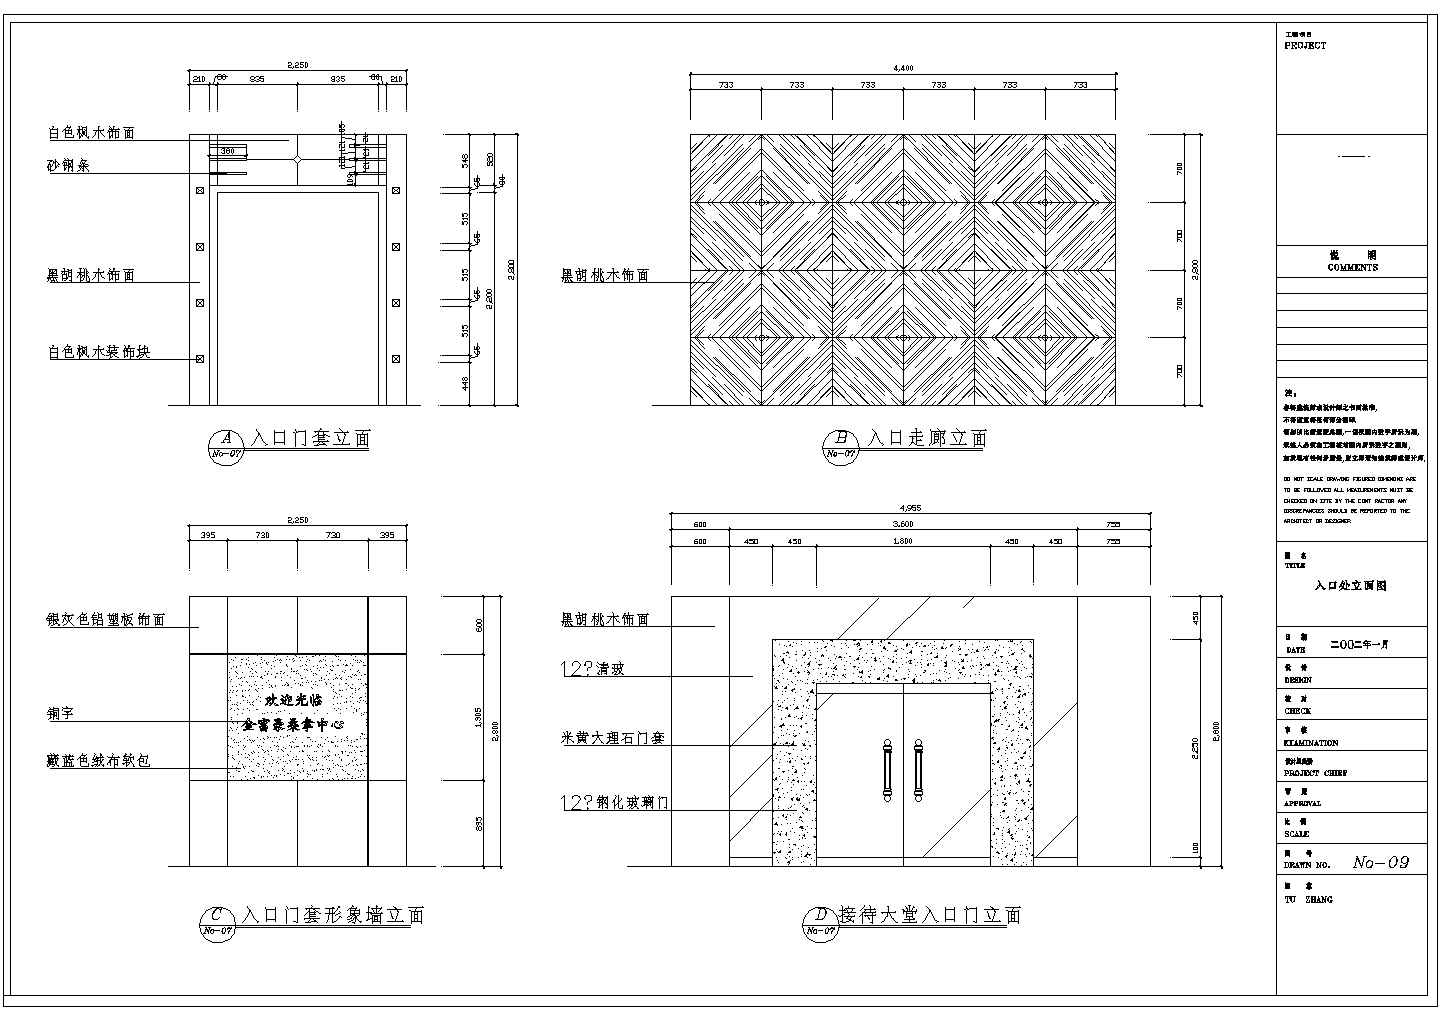 海丰市某连锁桑拿房全套装修设计CAD图纸